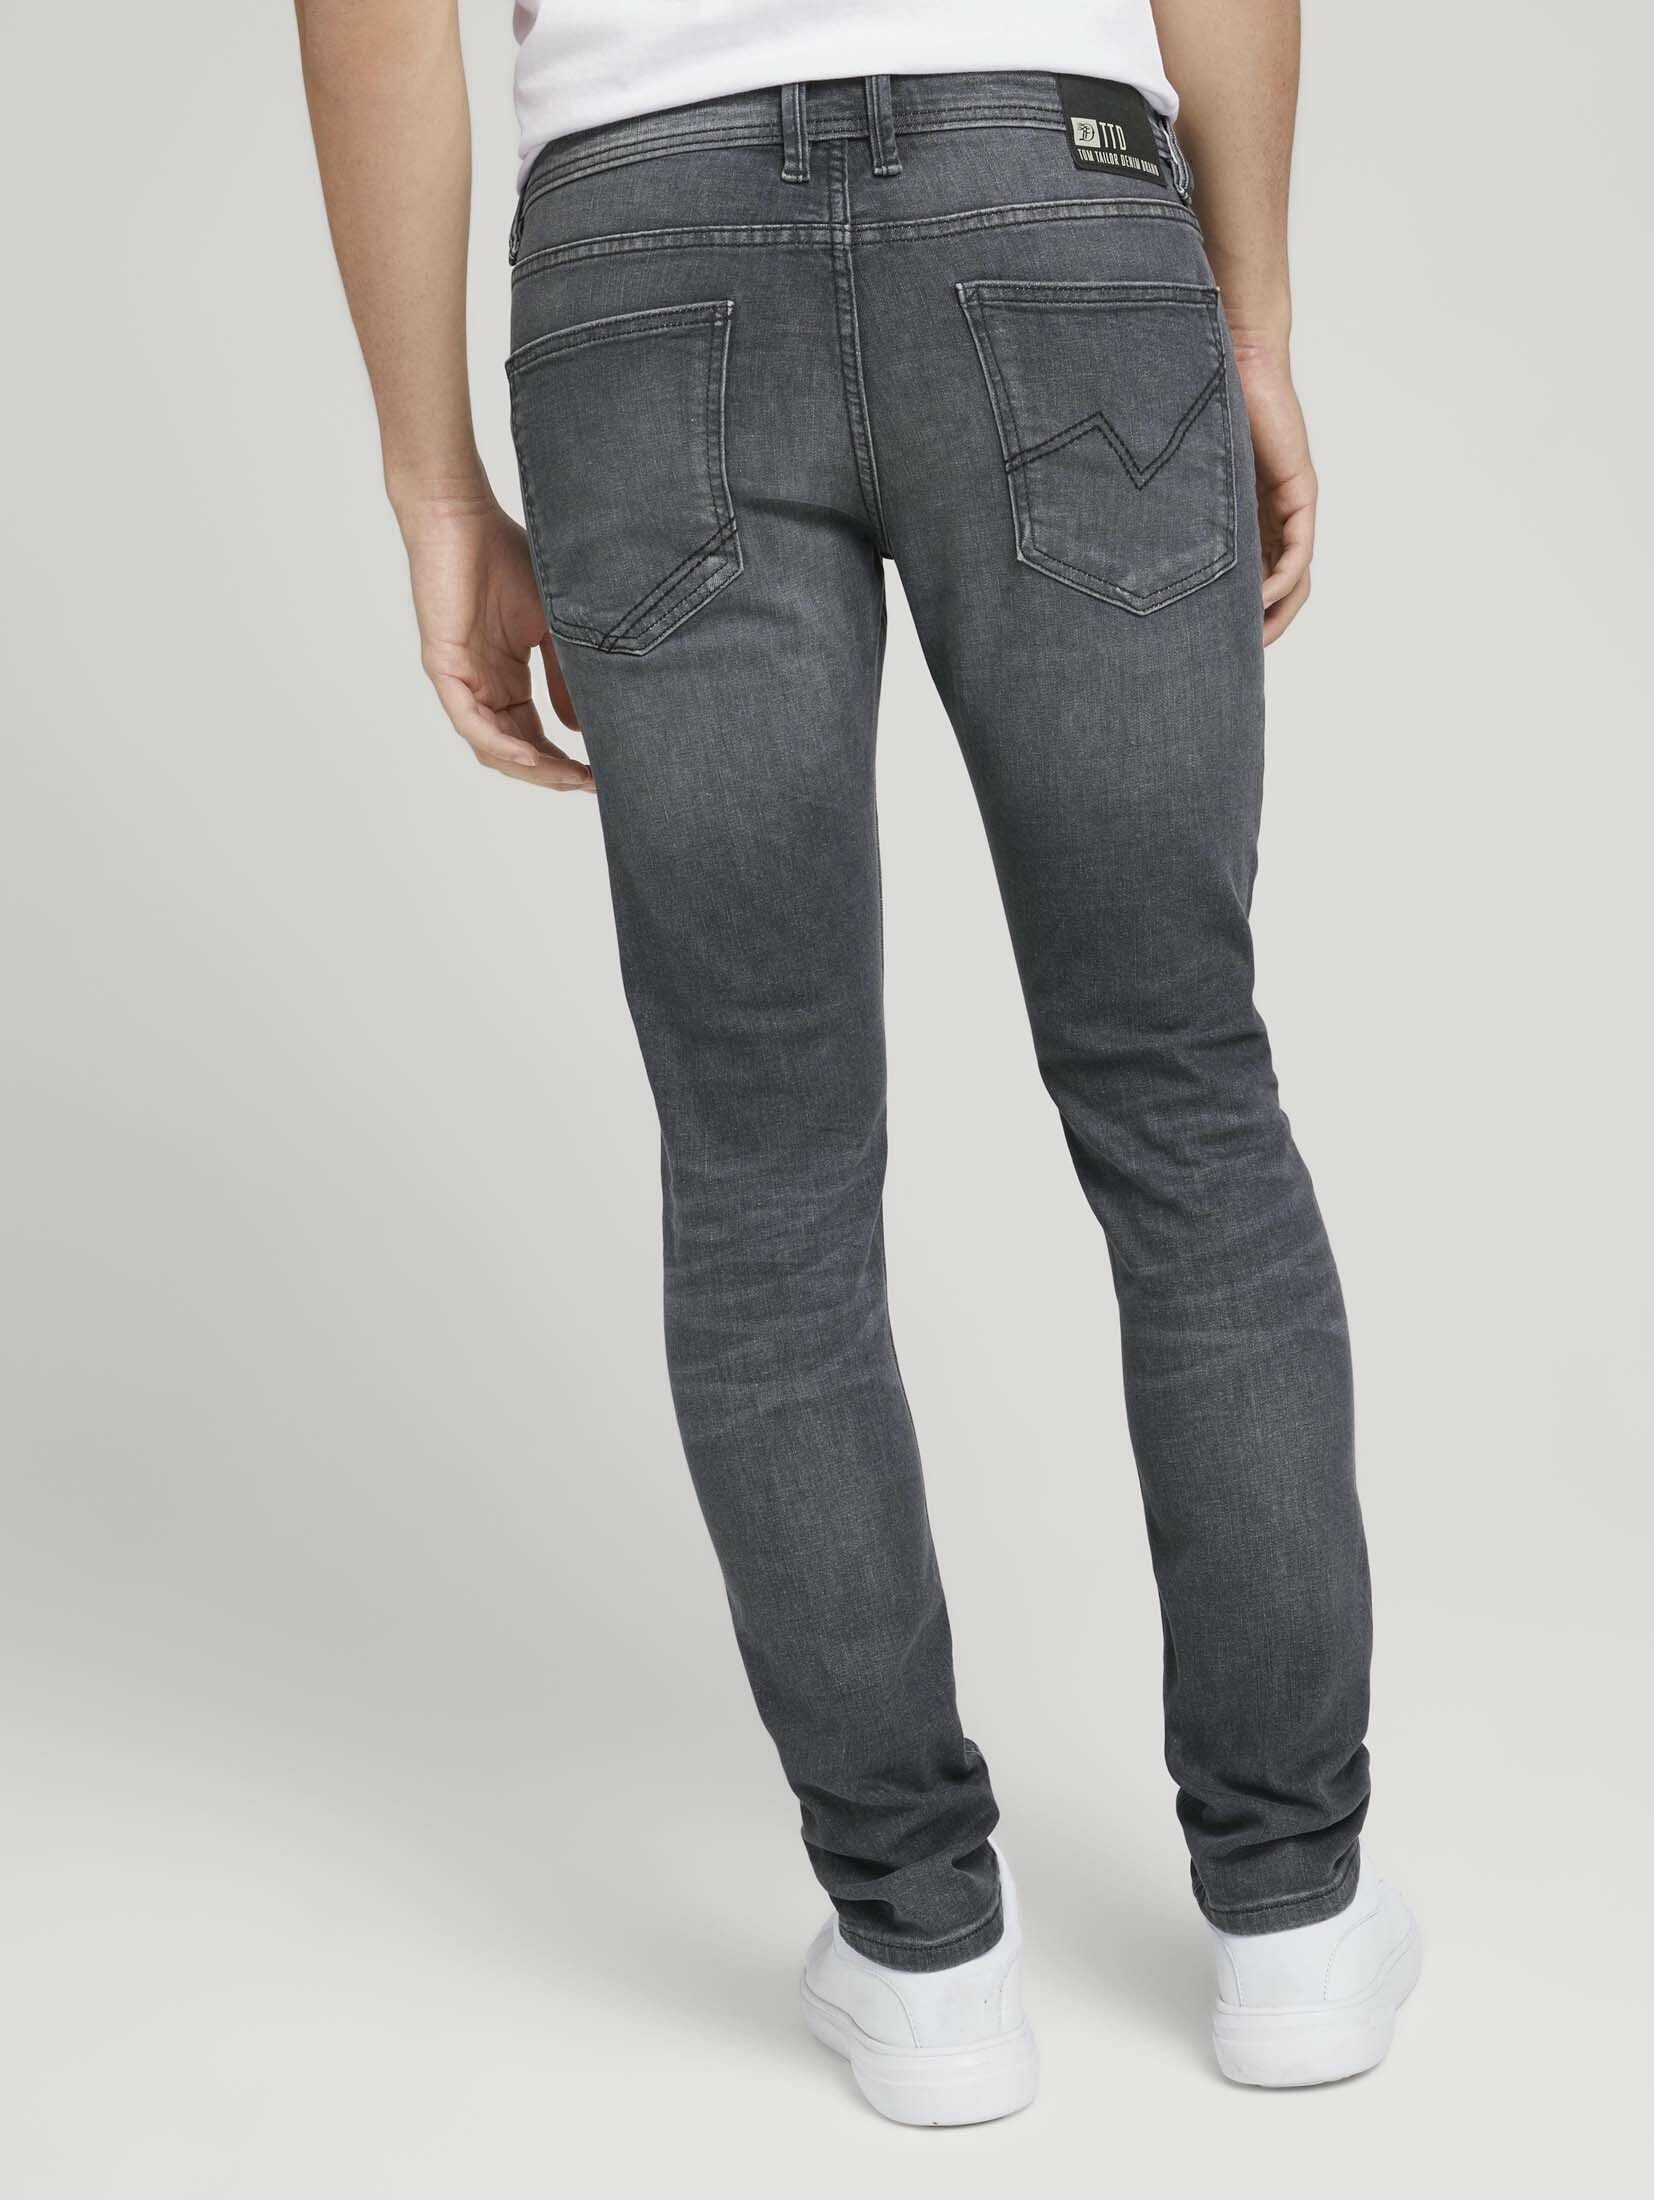 Piers Denim mit Slim Straight-Jeans TOM Bio-Baumwolle TAILOR Jeans